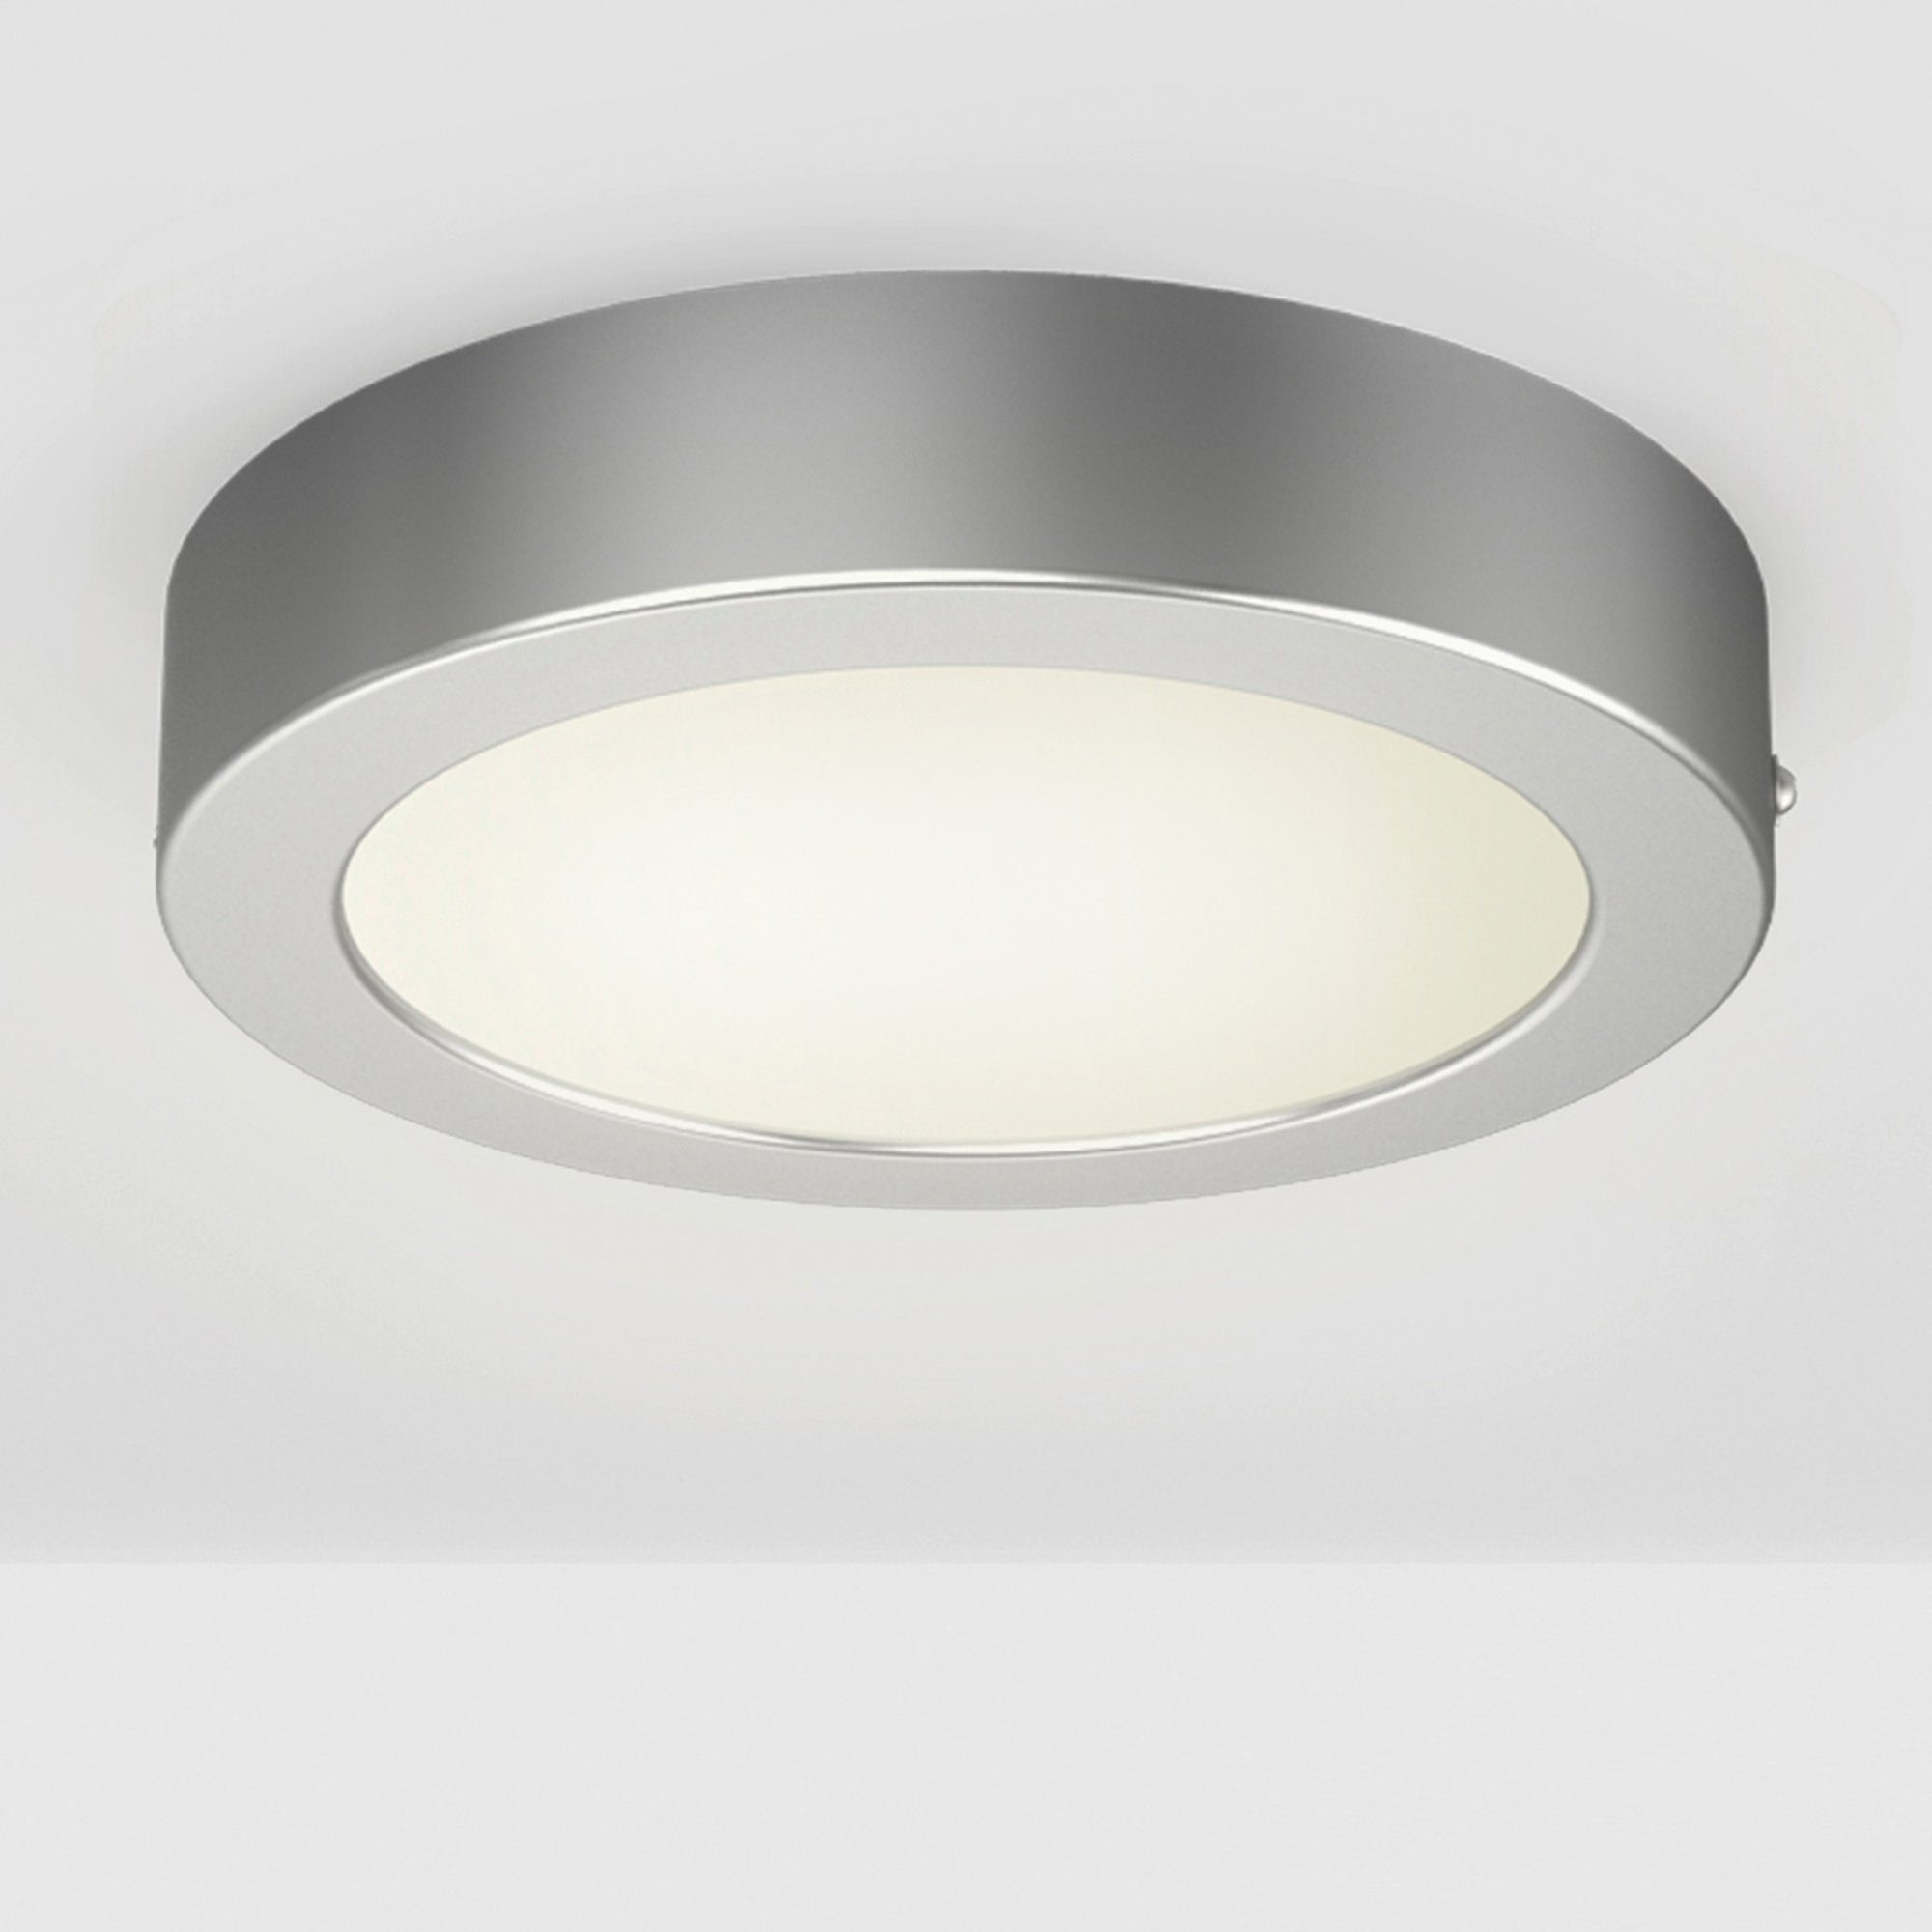 B.K.Licht LED Aufbaustrahler Garnet Grau, LED fest integriert, Warmweiß,  Aufputz-Deckenlampe, 230V, Wand-Leuchte, Panel, Deckenleuchte, silber